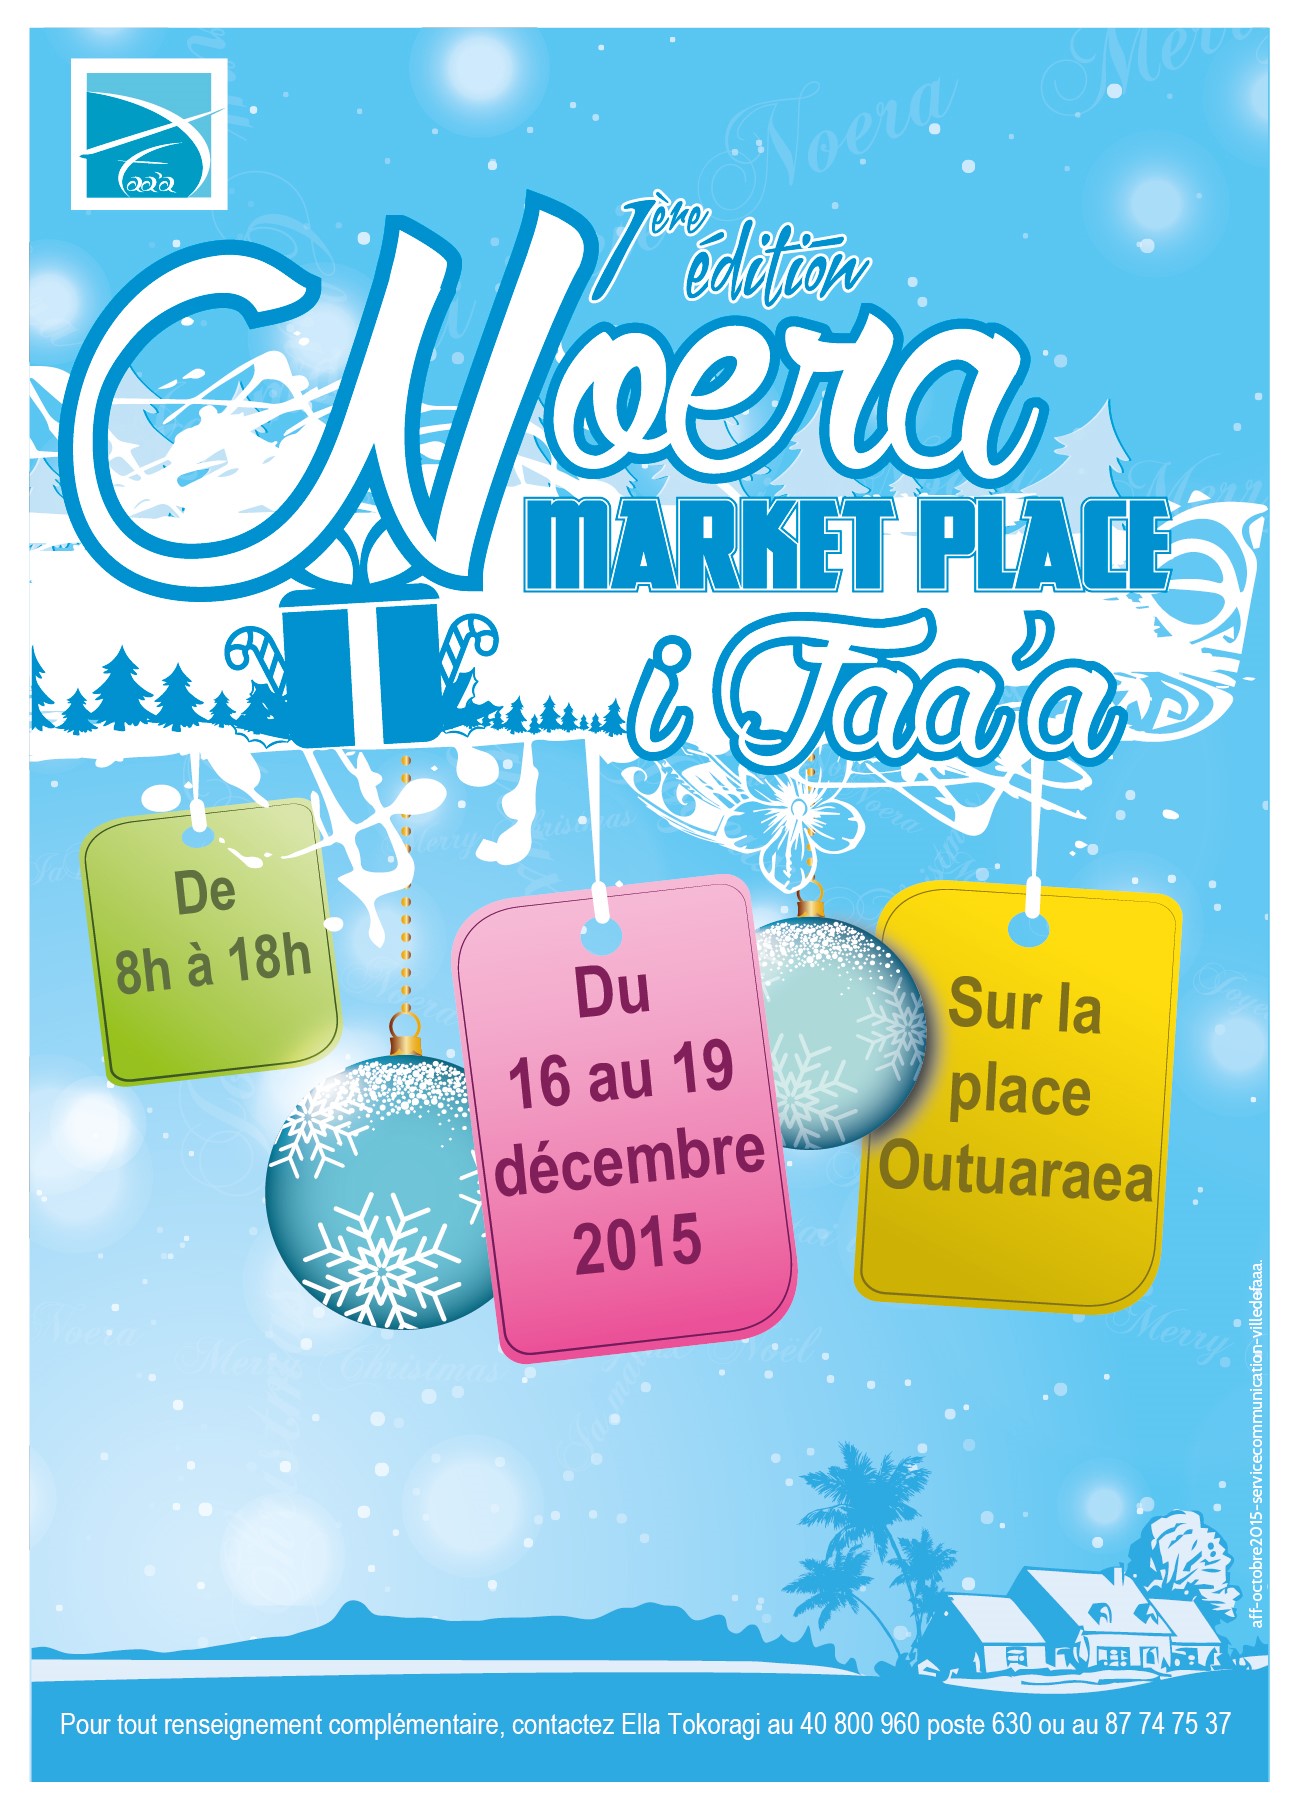 "Noera Market Place i Faa’a" du 16 au 19 décembre 2015 à l’esplanade de Outuaraea.